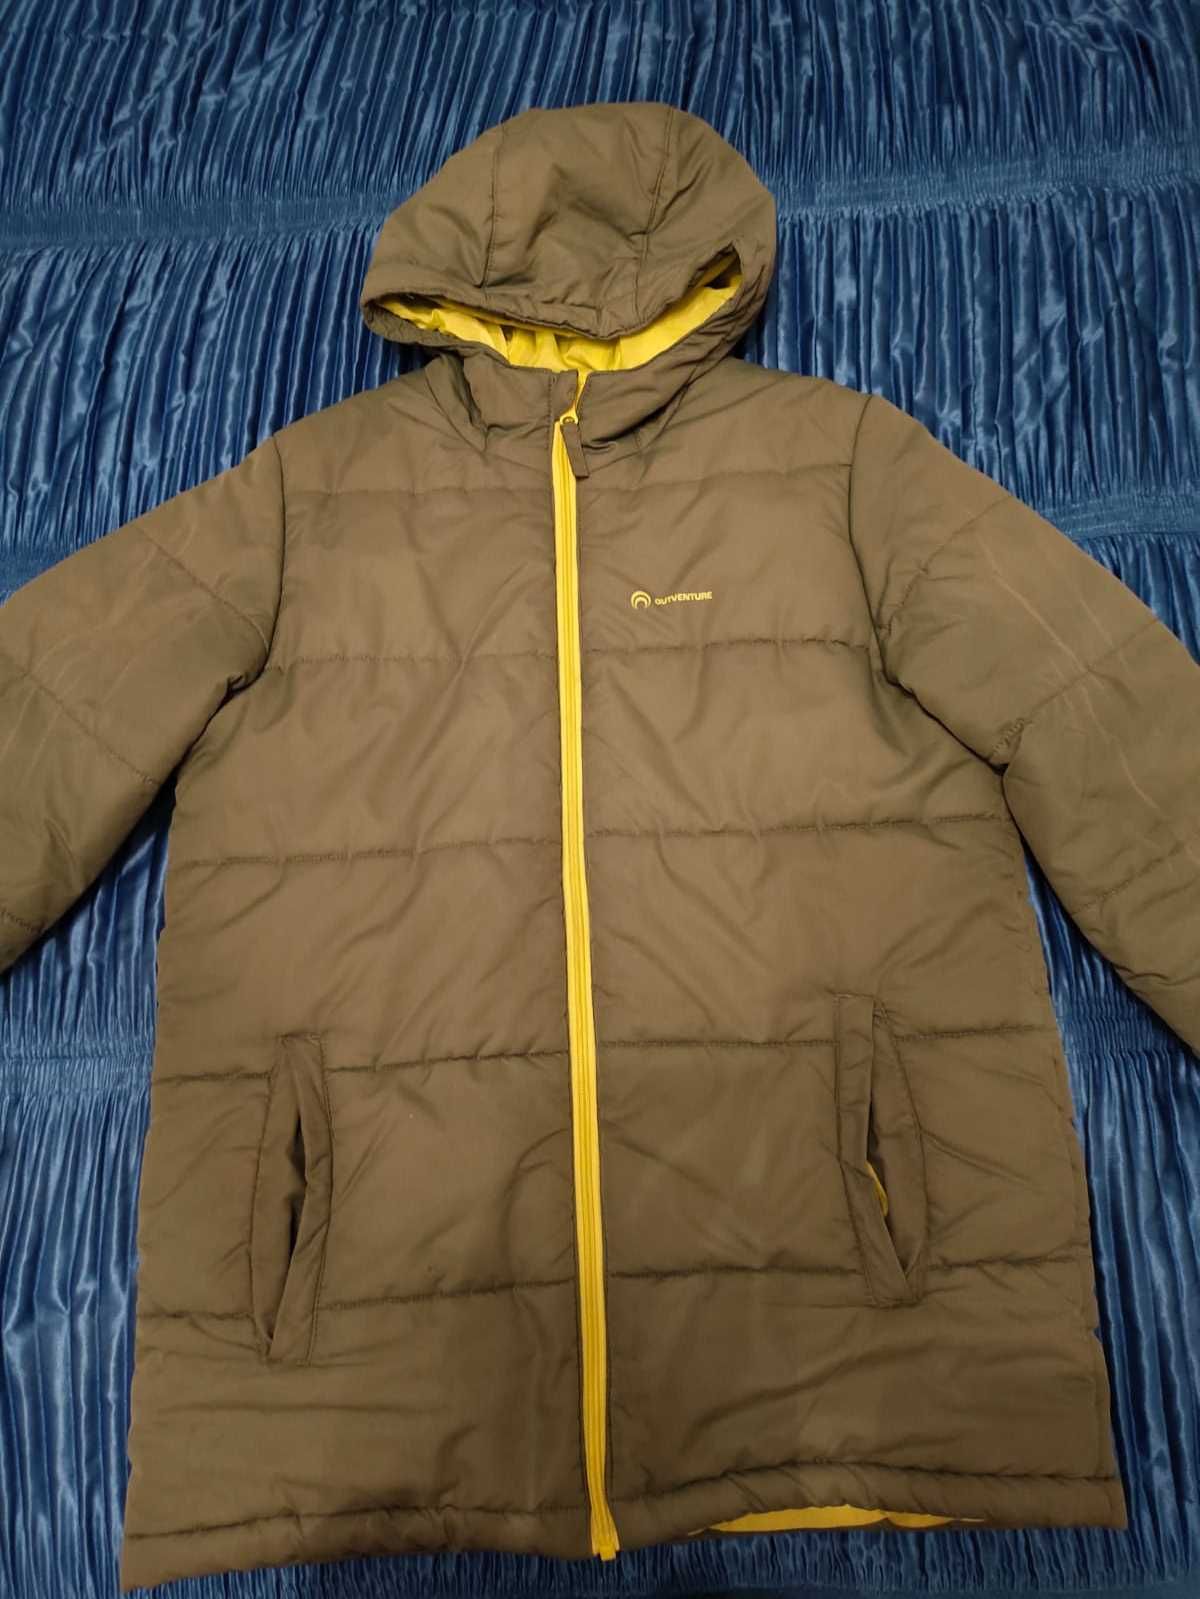 Продам куртку (осень-зима) на подростка (11-13 лет)фирмы outventure